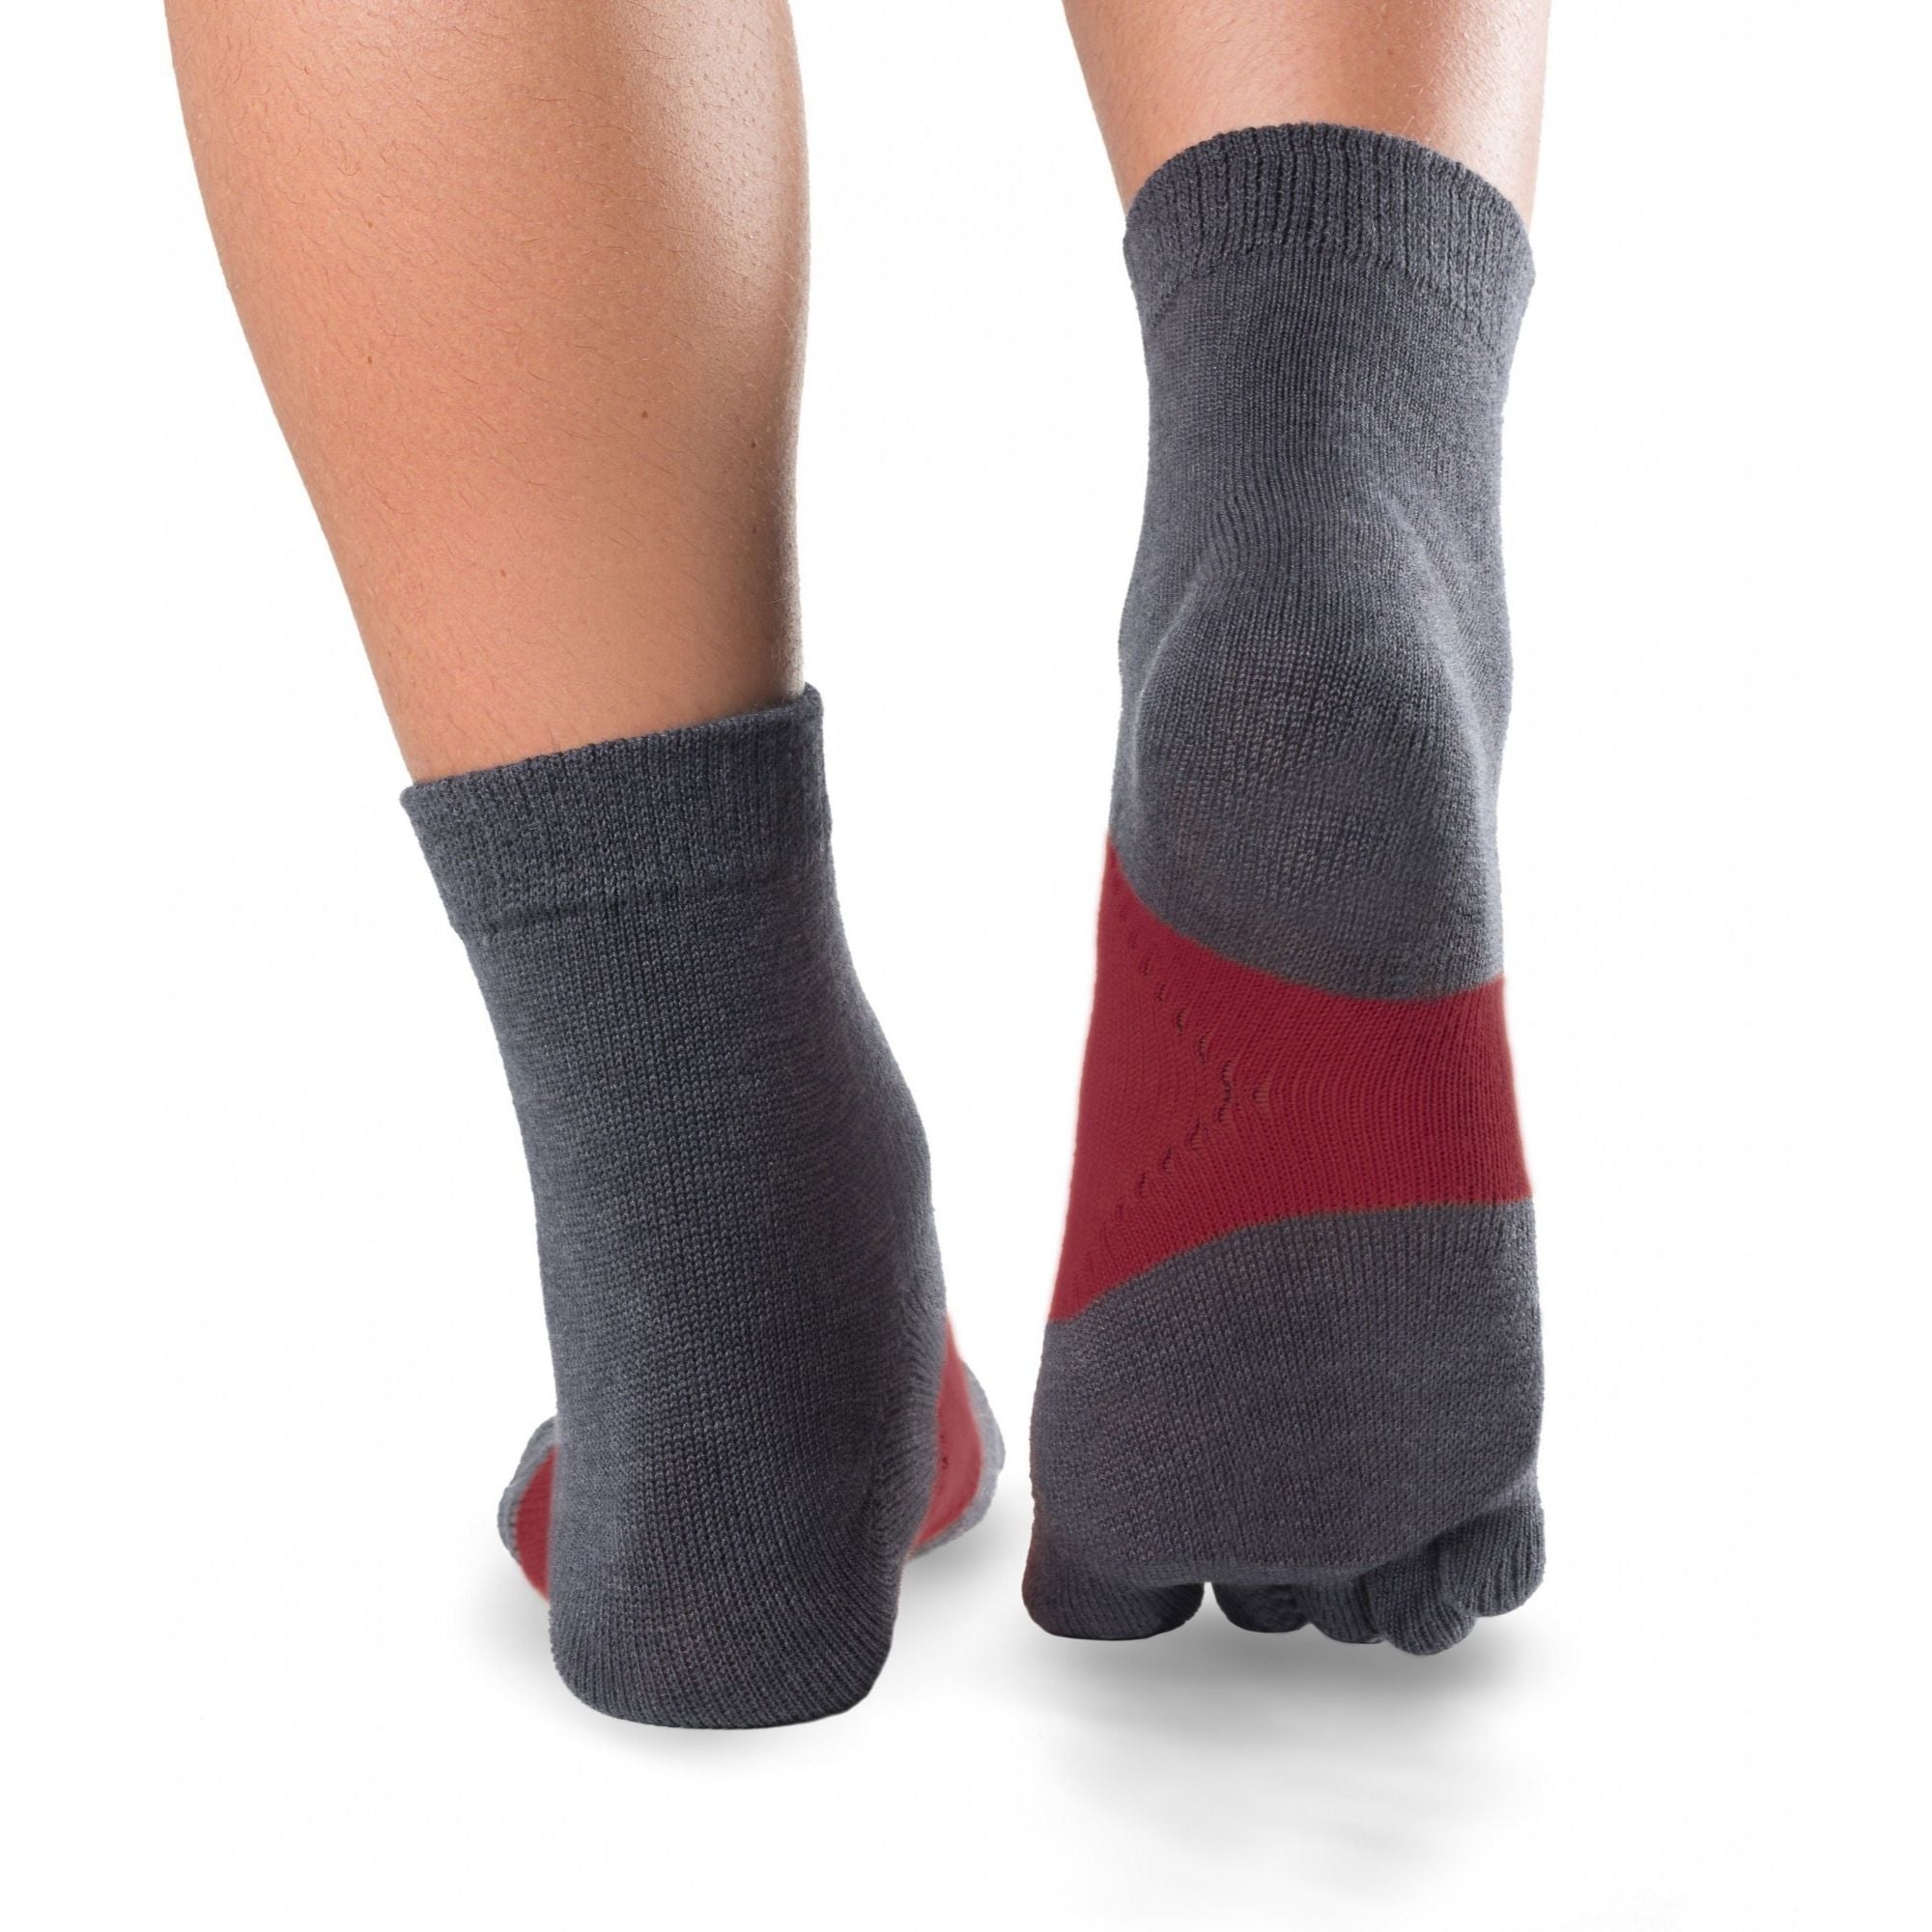 Running TS running toe socks - the essential running toe socks from Knitido :gray / carmine red